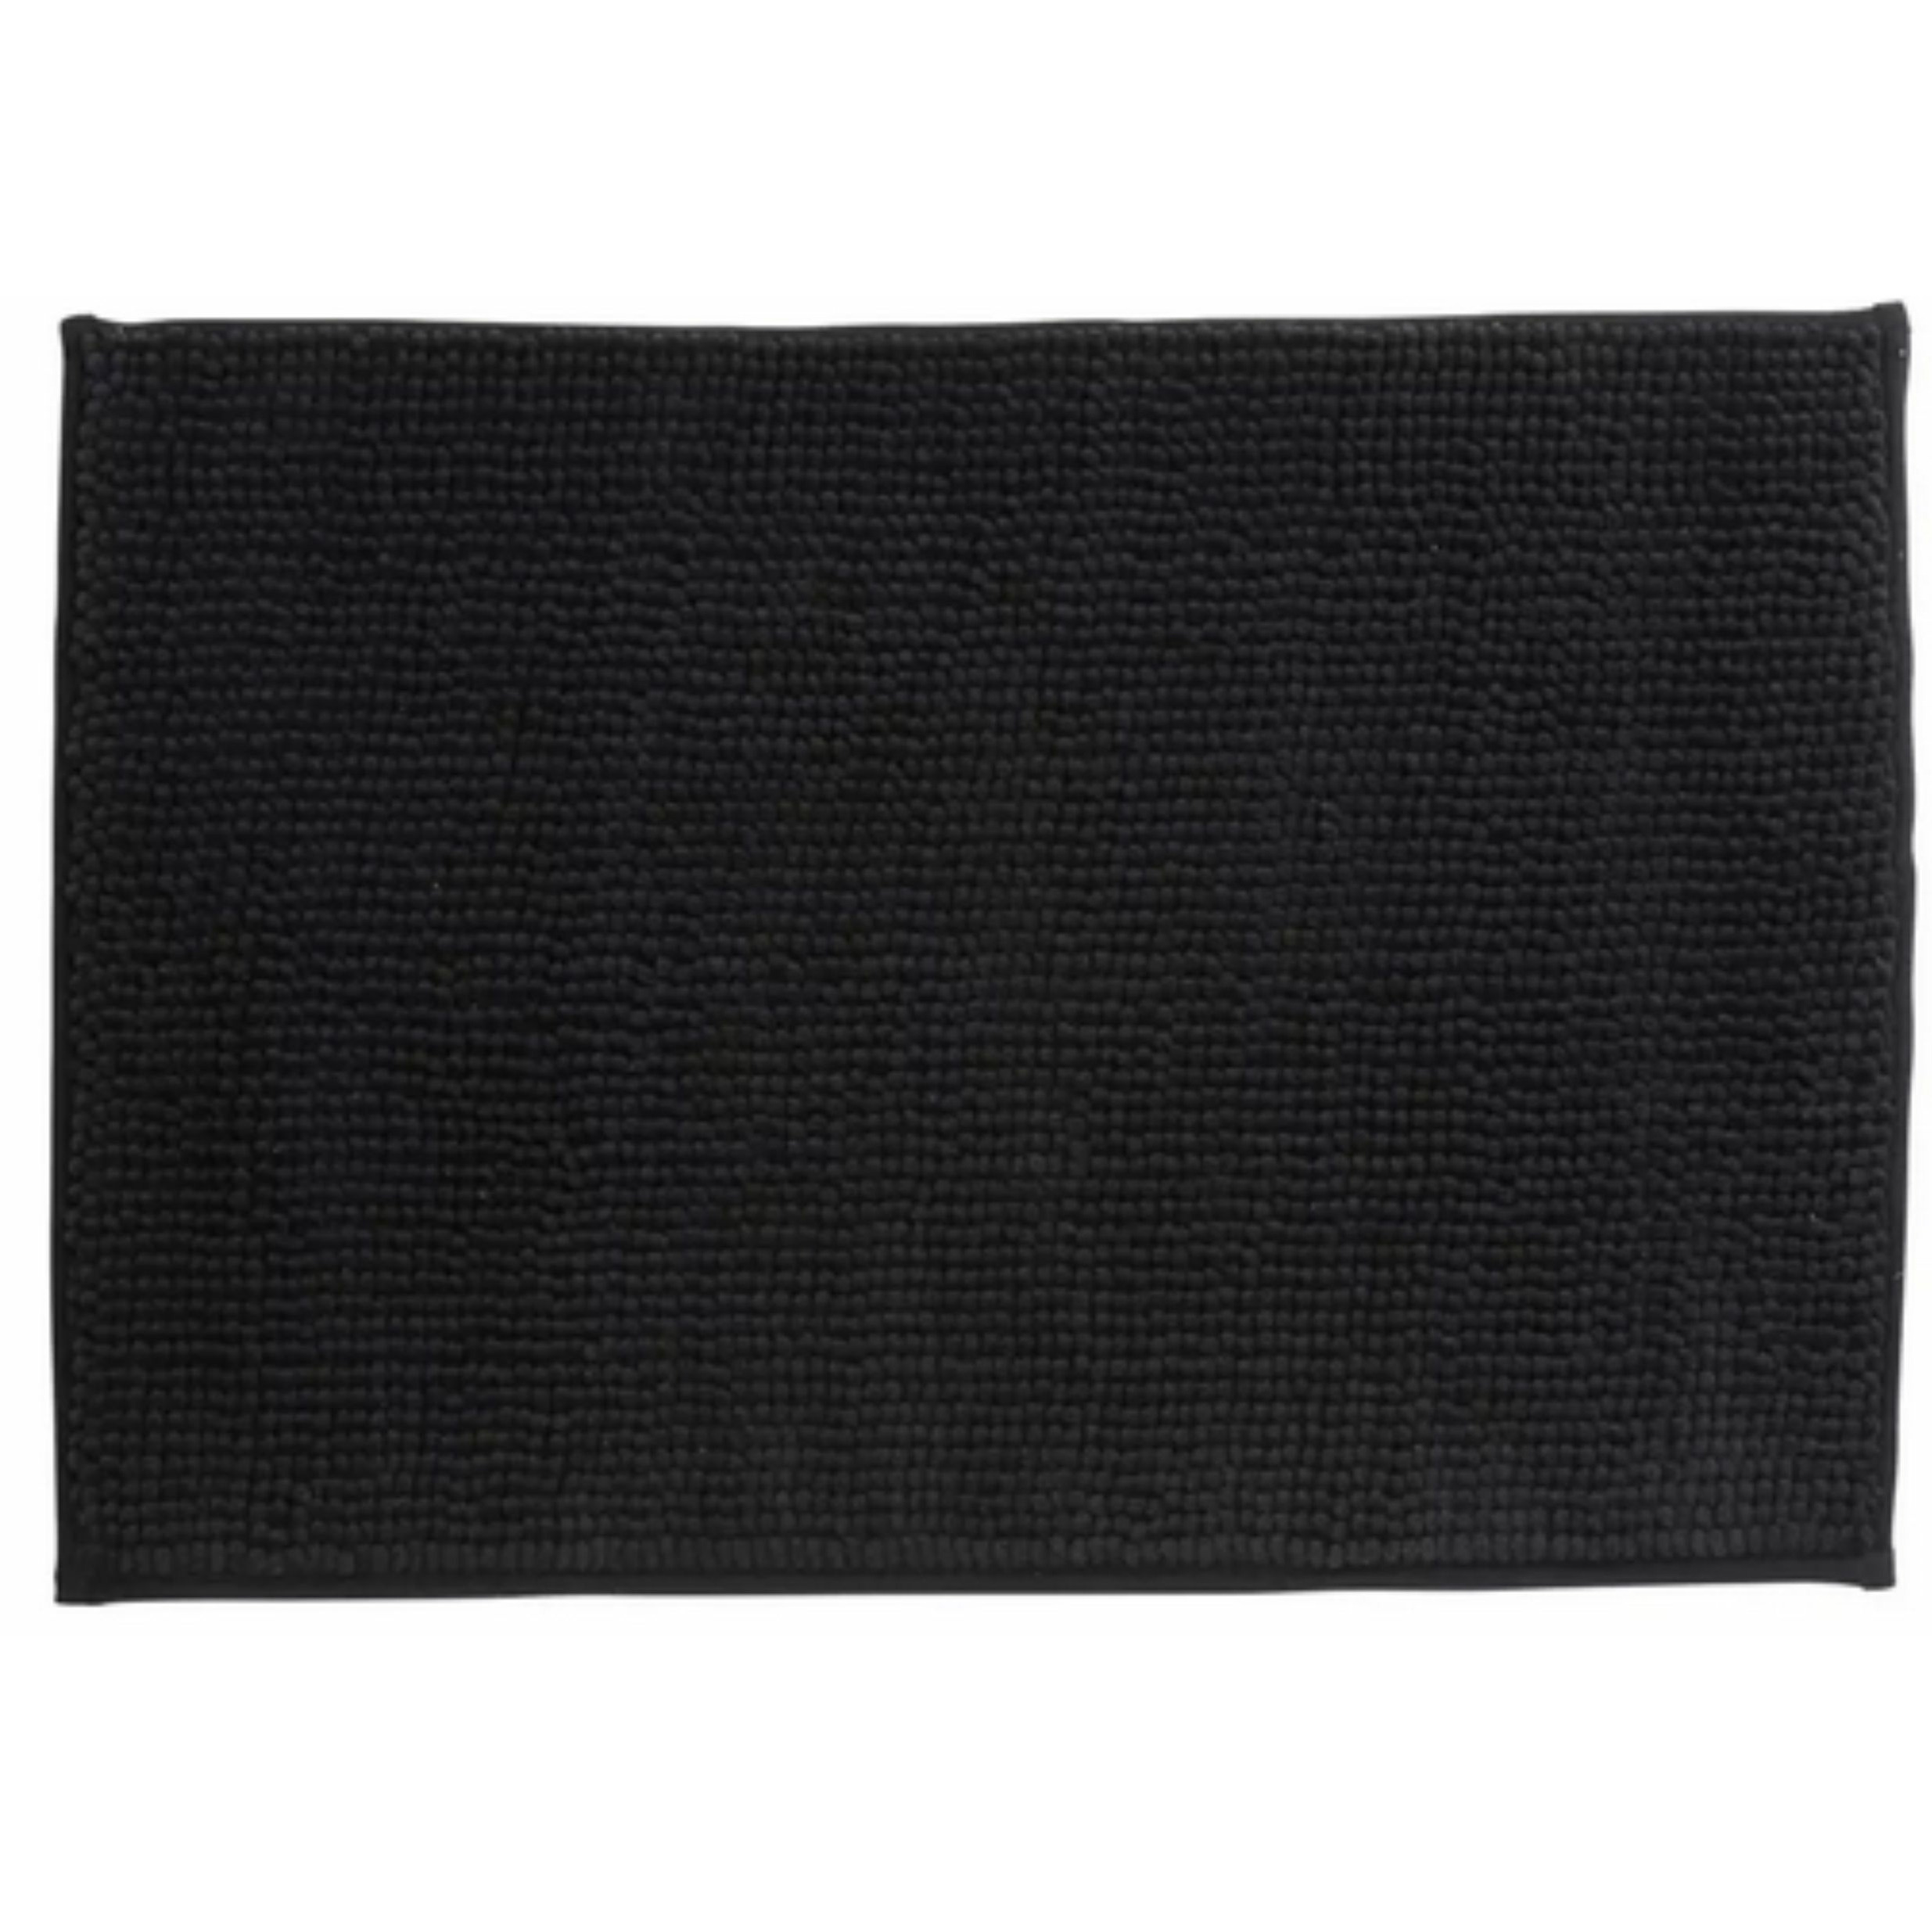 Badkamerkleedje-badmat tapijt voor op de vloer zwart 40 x 60 cm